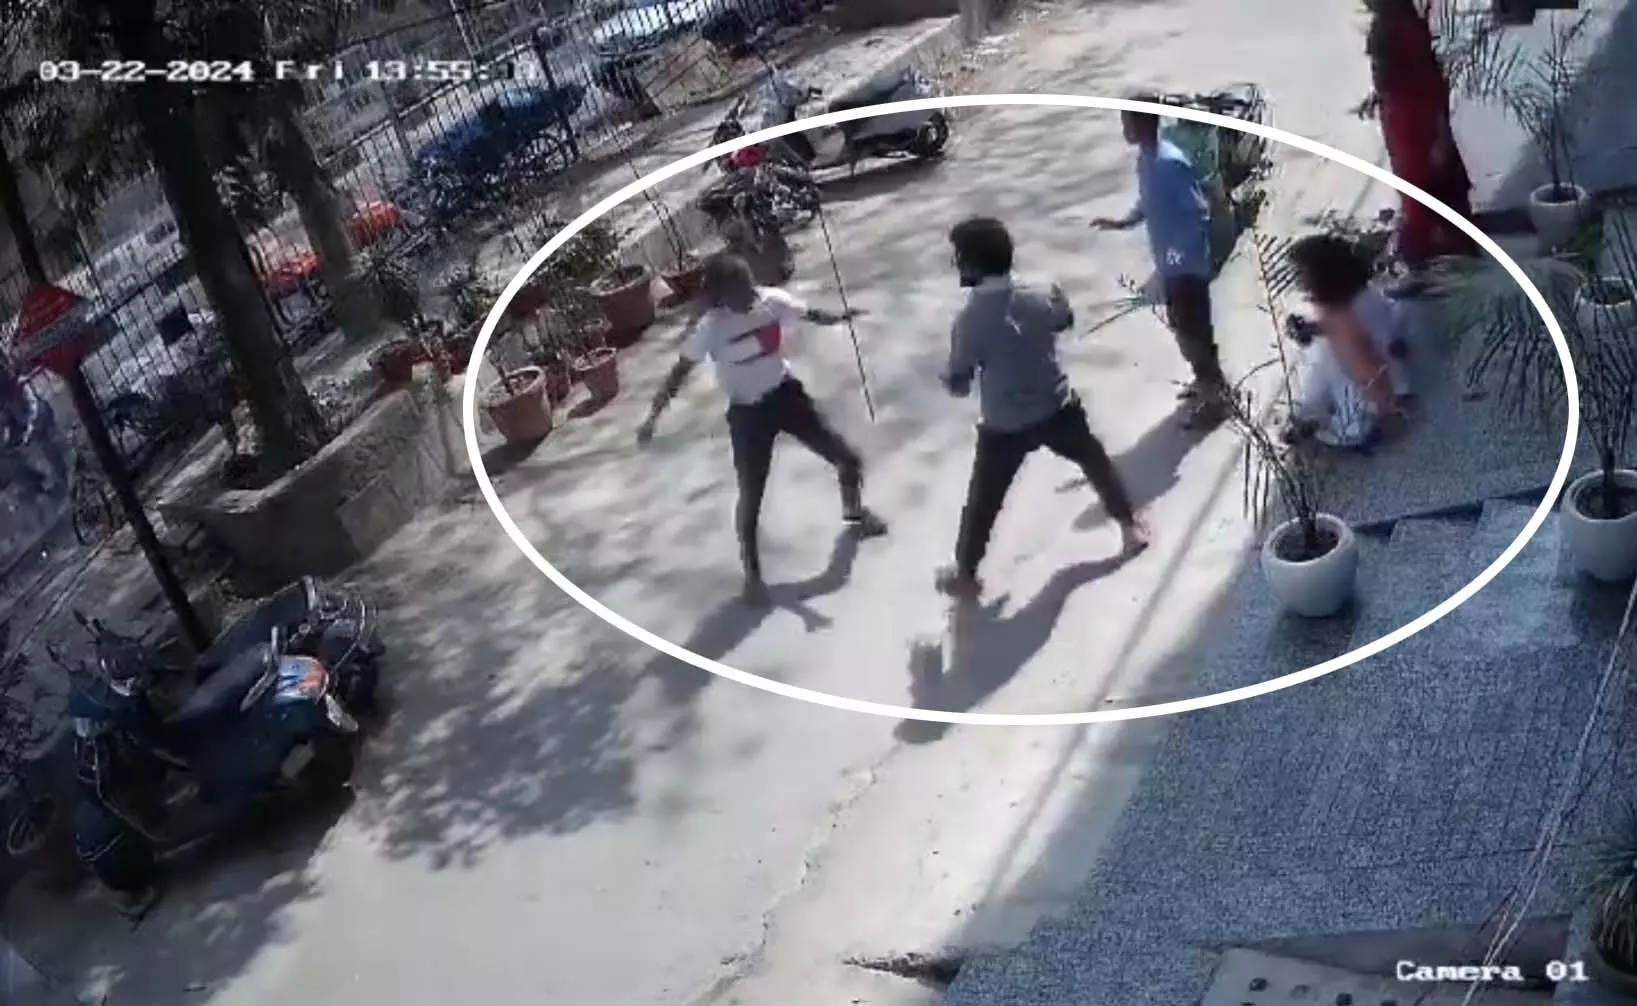 लड़की पर चाकू से हमला, 2 लोगों ने हिम्मत दिखाते हुए लड़के को रोका, देखें वीडियो